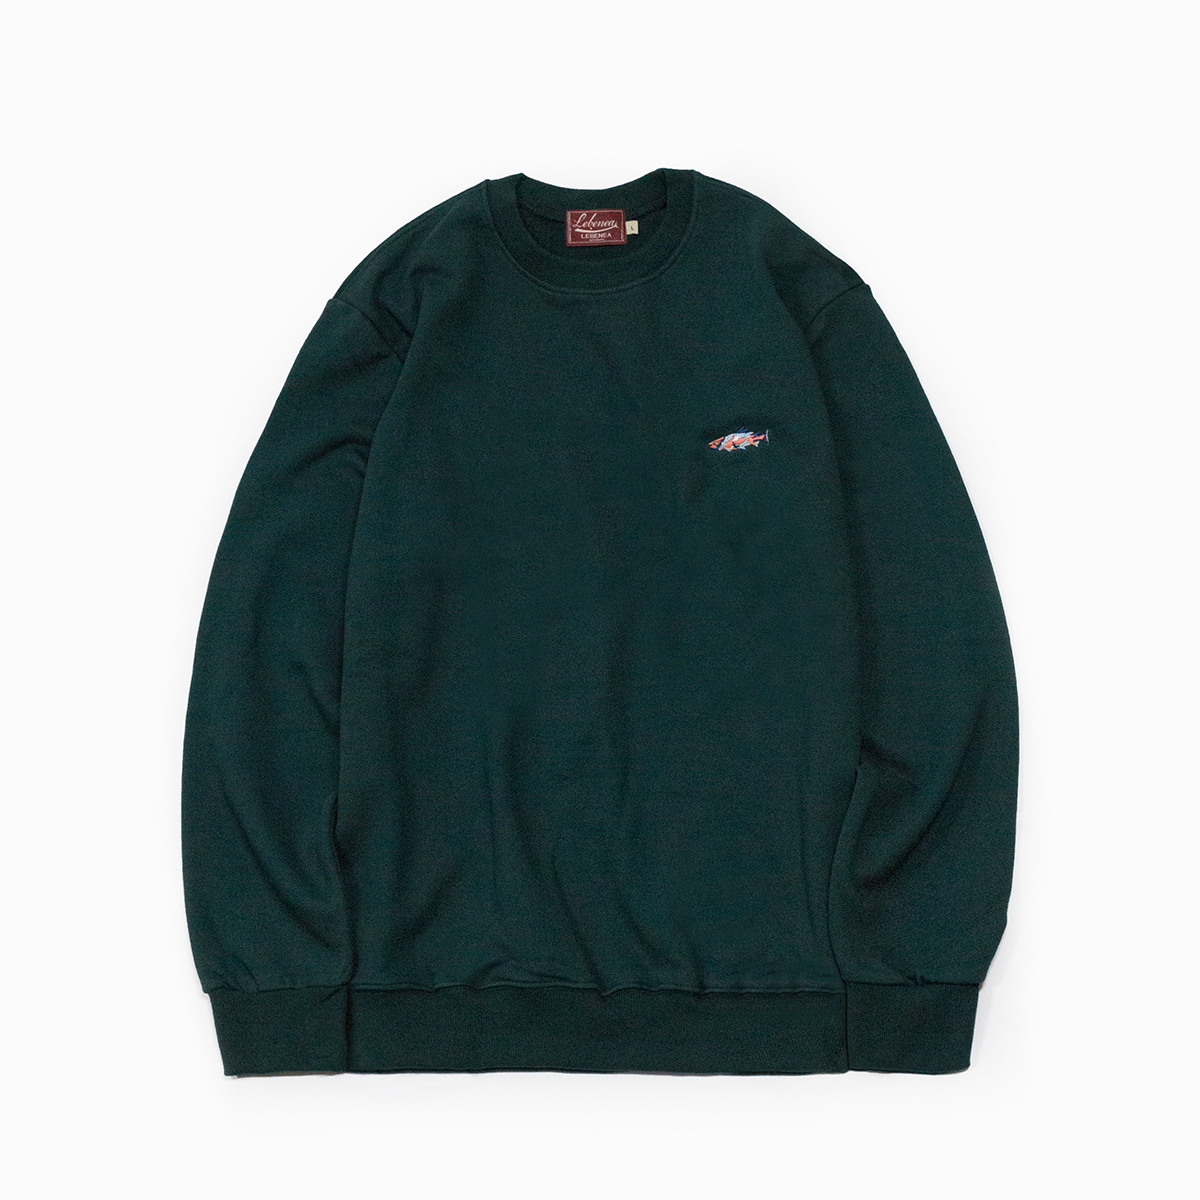 [Lebenea]Lovely Salmon Sweatshirt - Dark green